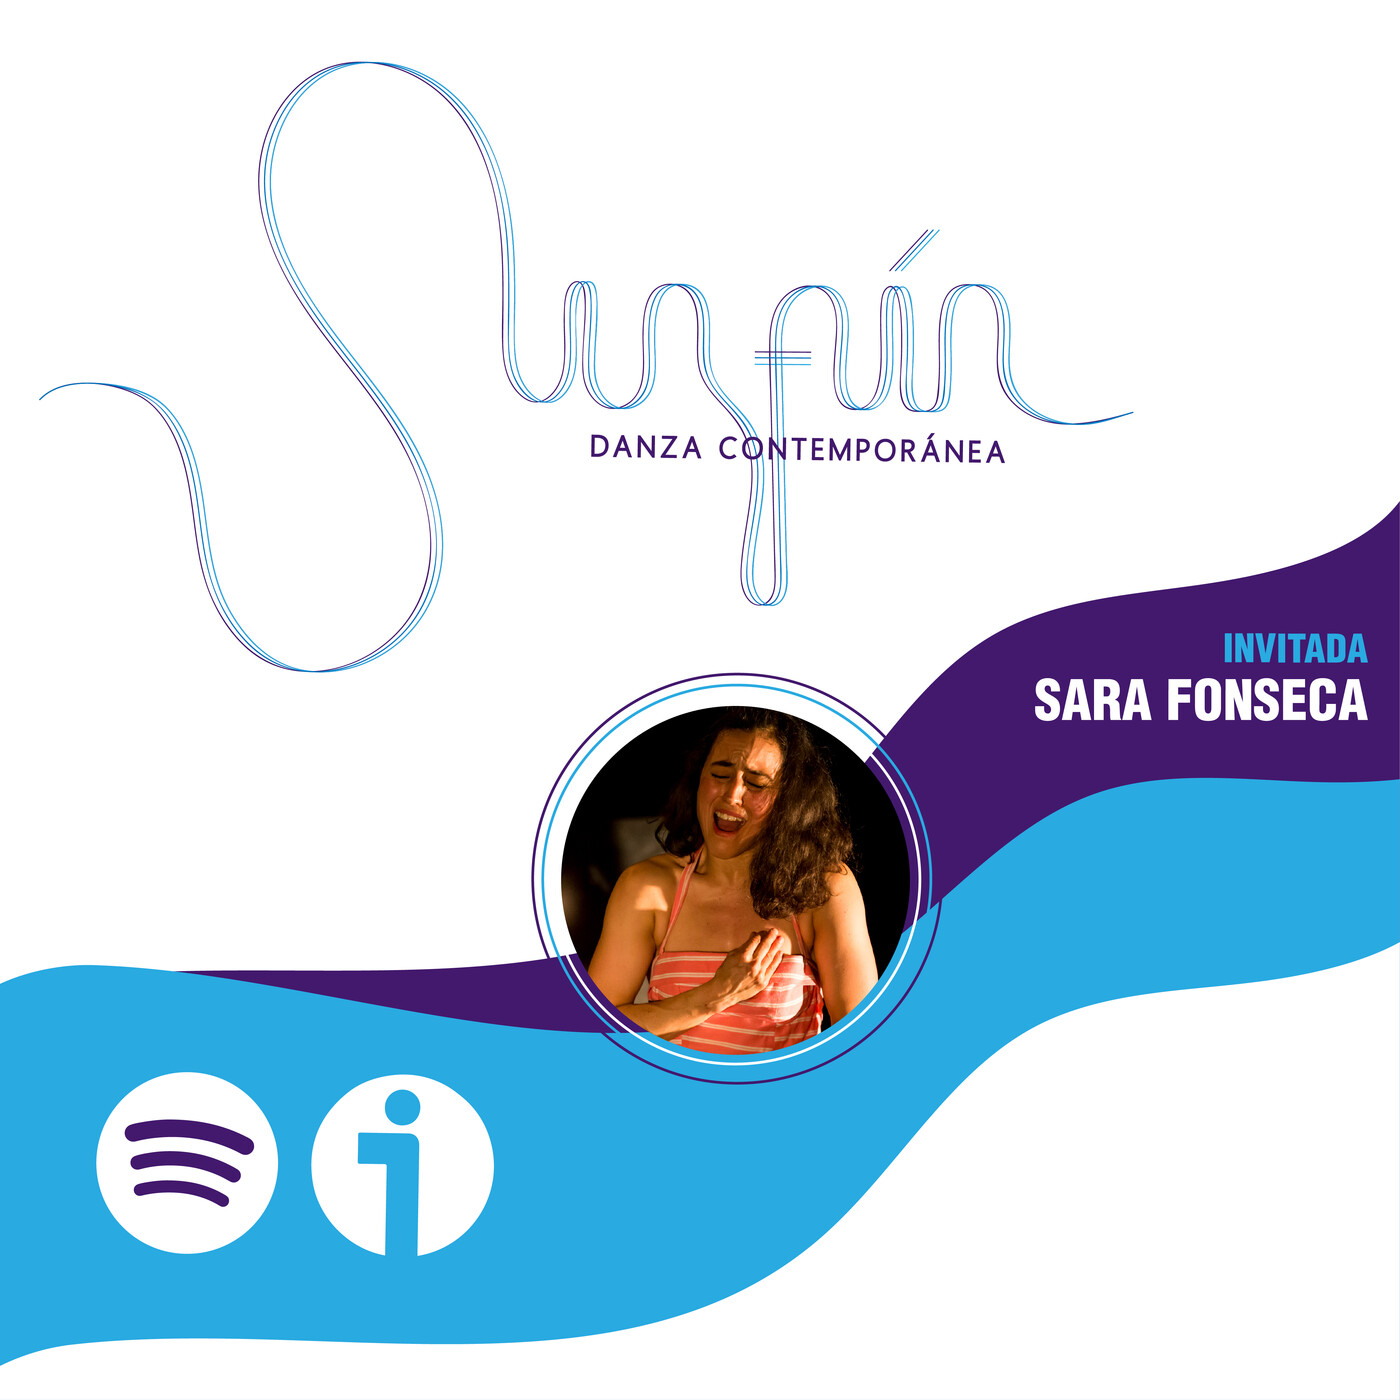 Sara Fonseca - Bailarina